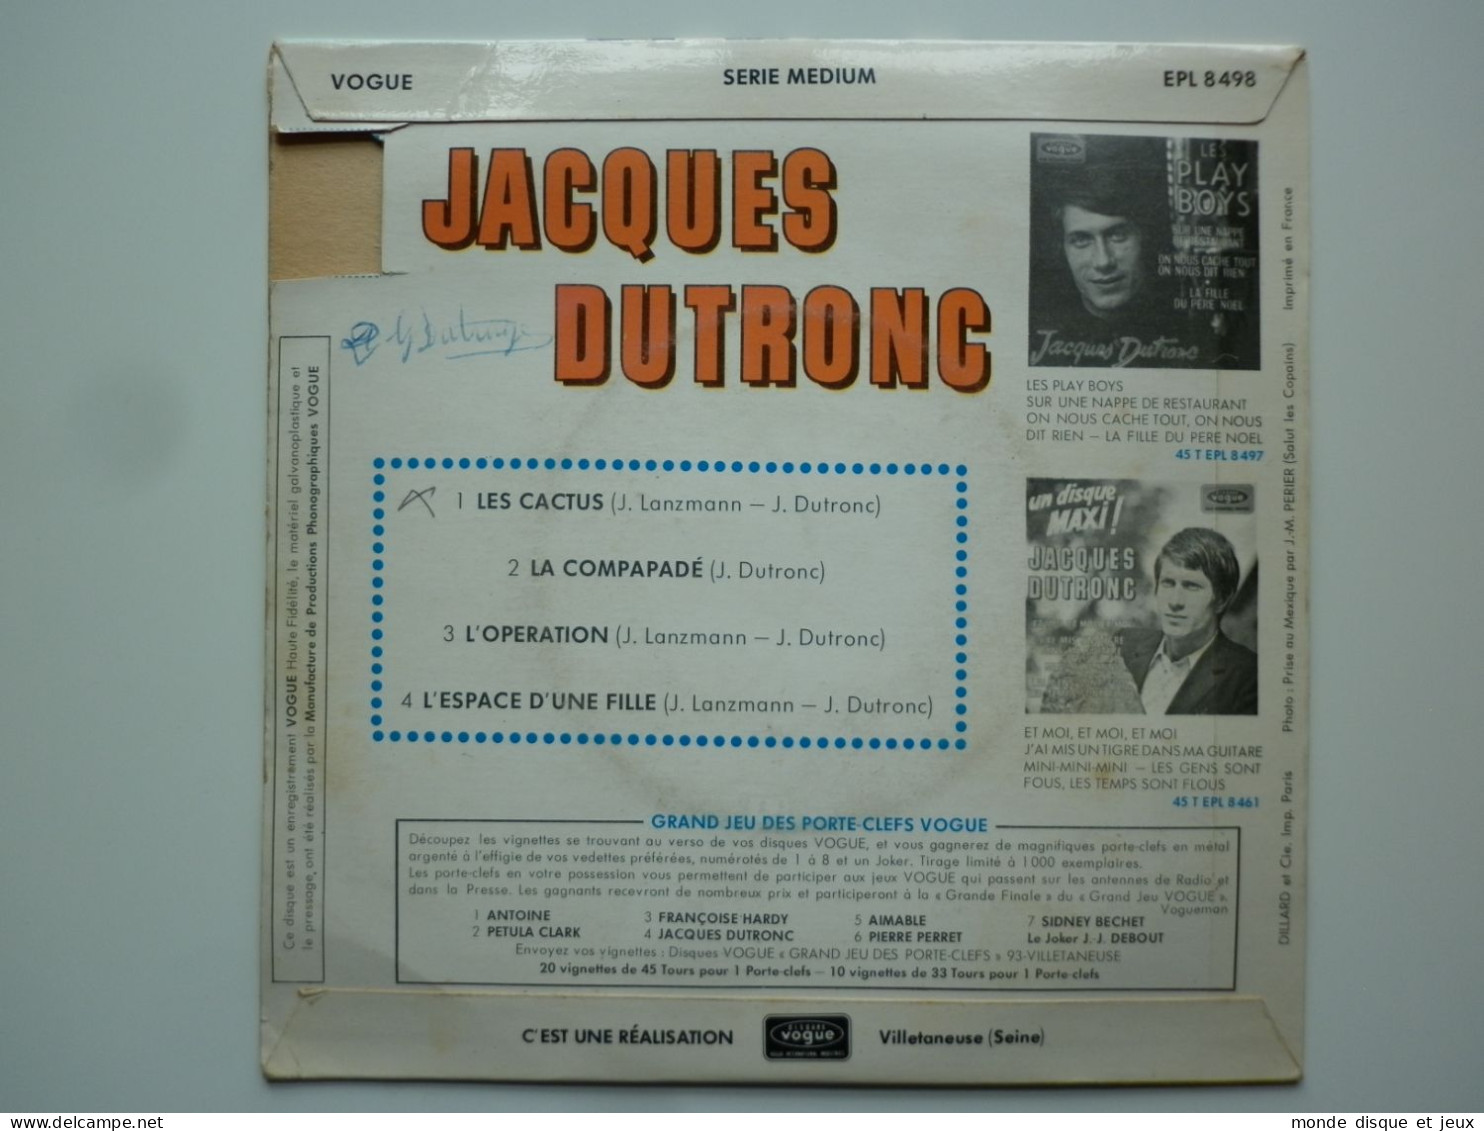 Jacques Dutronc 45Tours EP Vinyle Les Cactus - 45 G - Maxi-Single